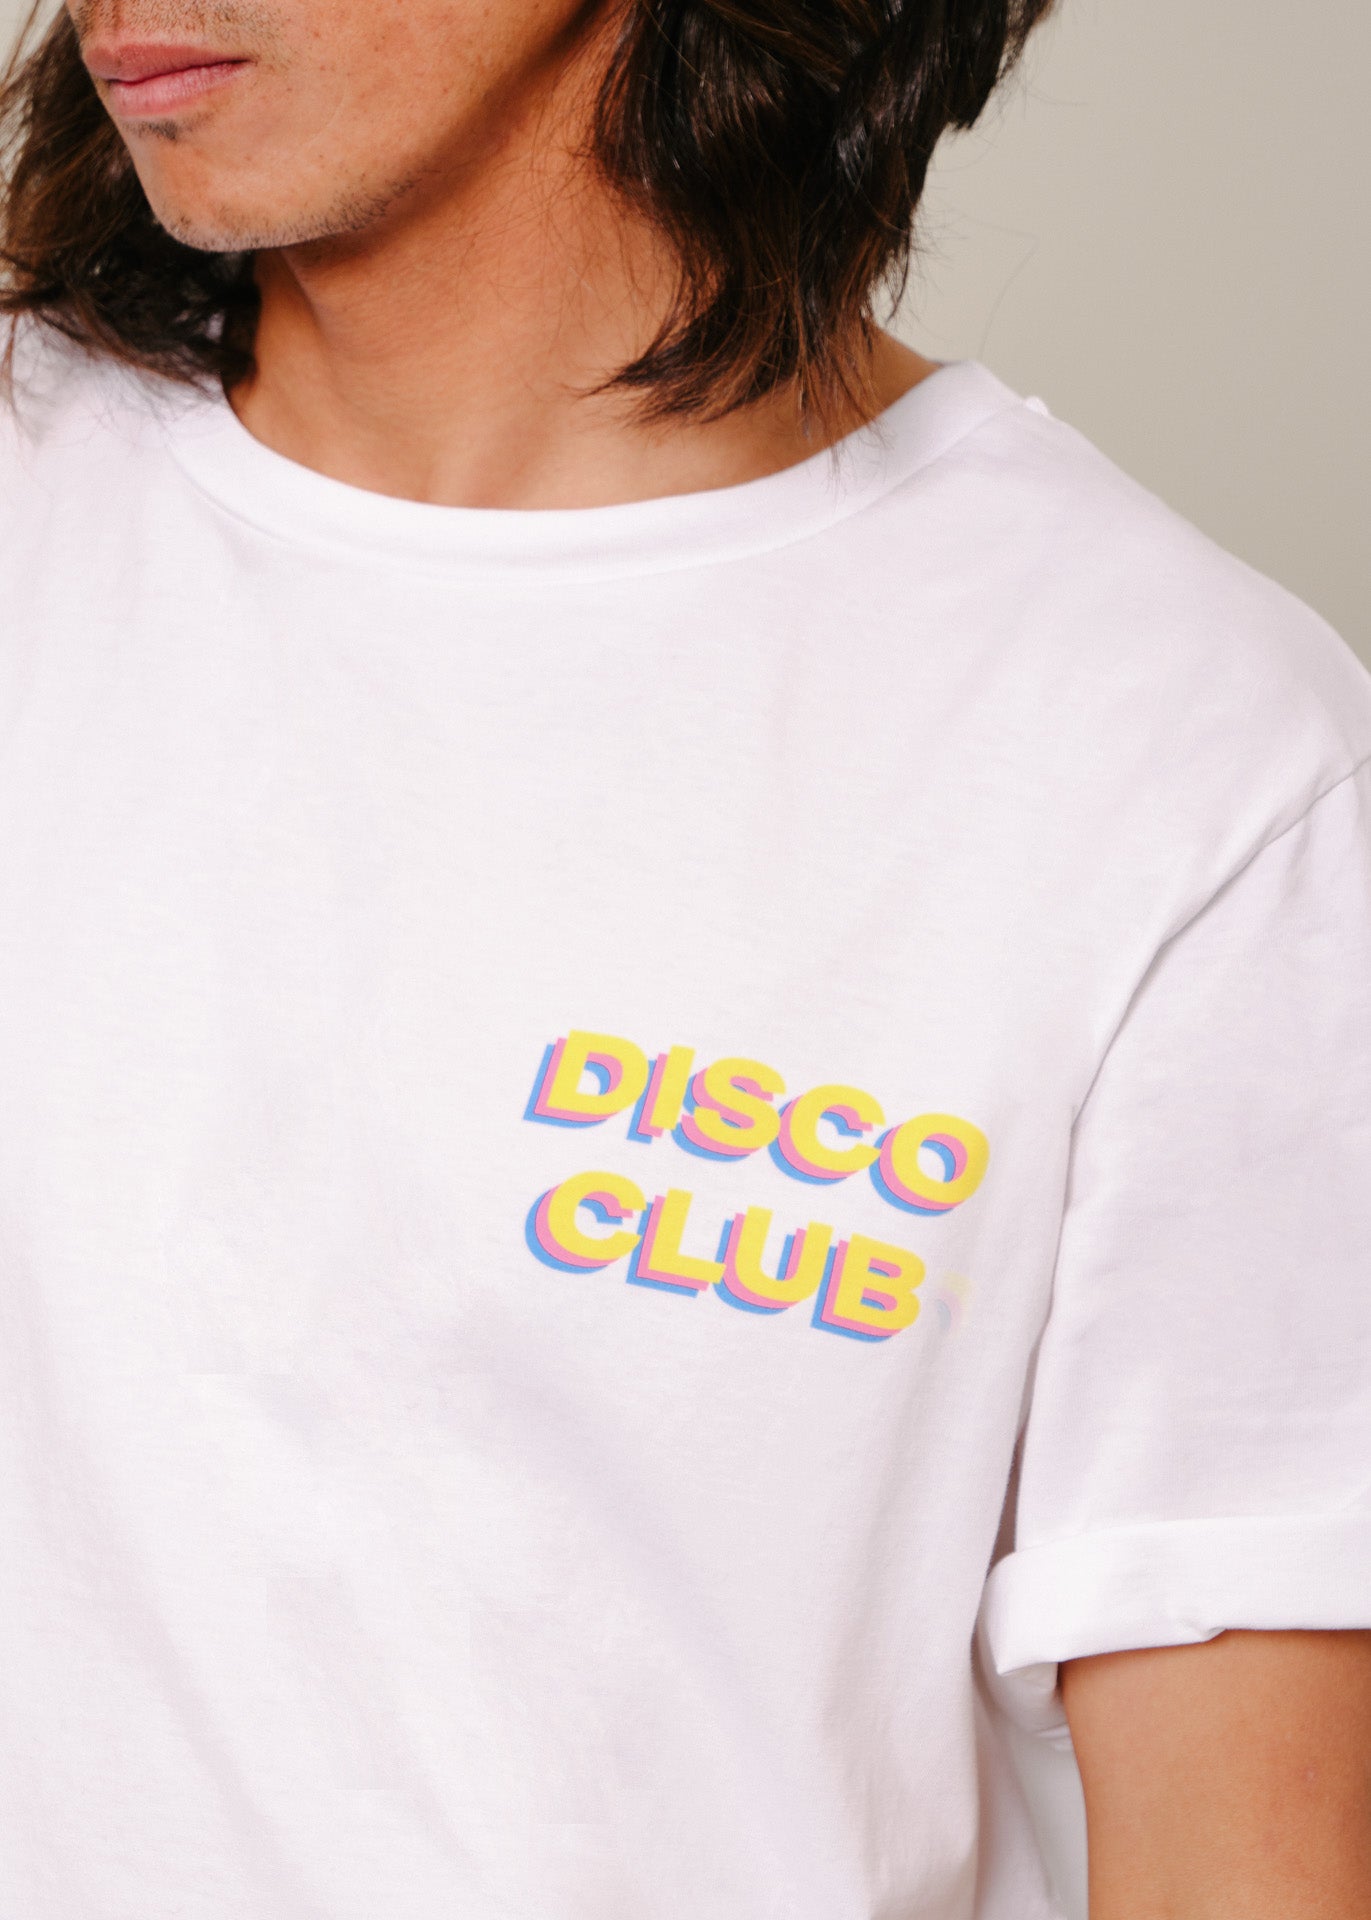 Le t-shirt Disco club